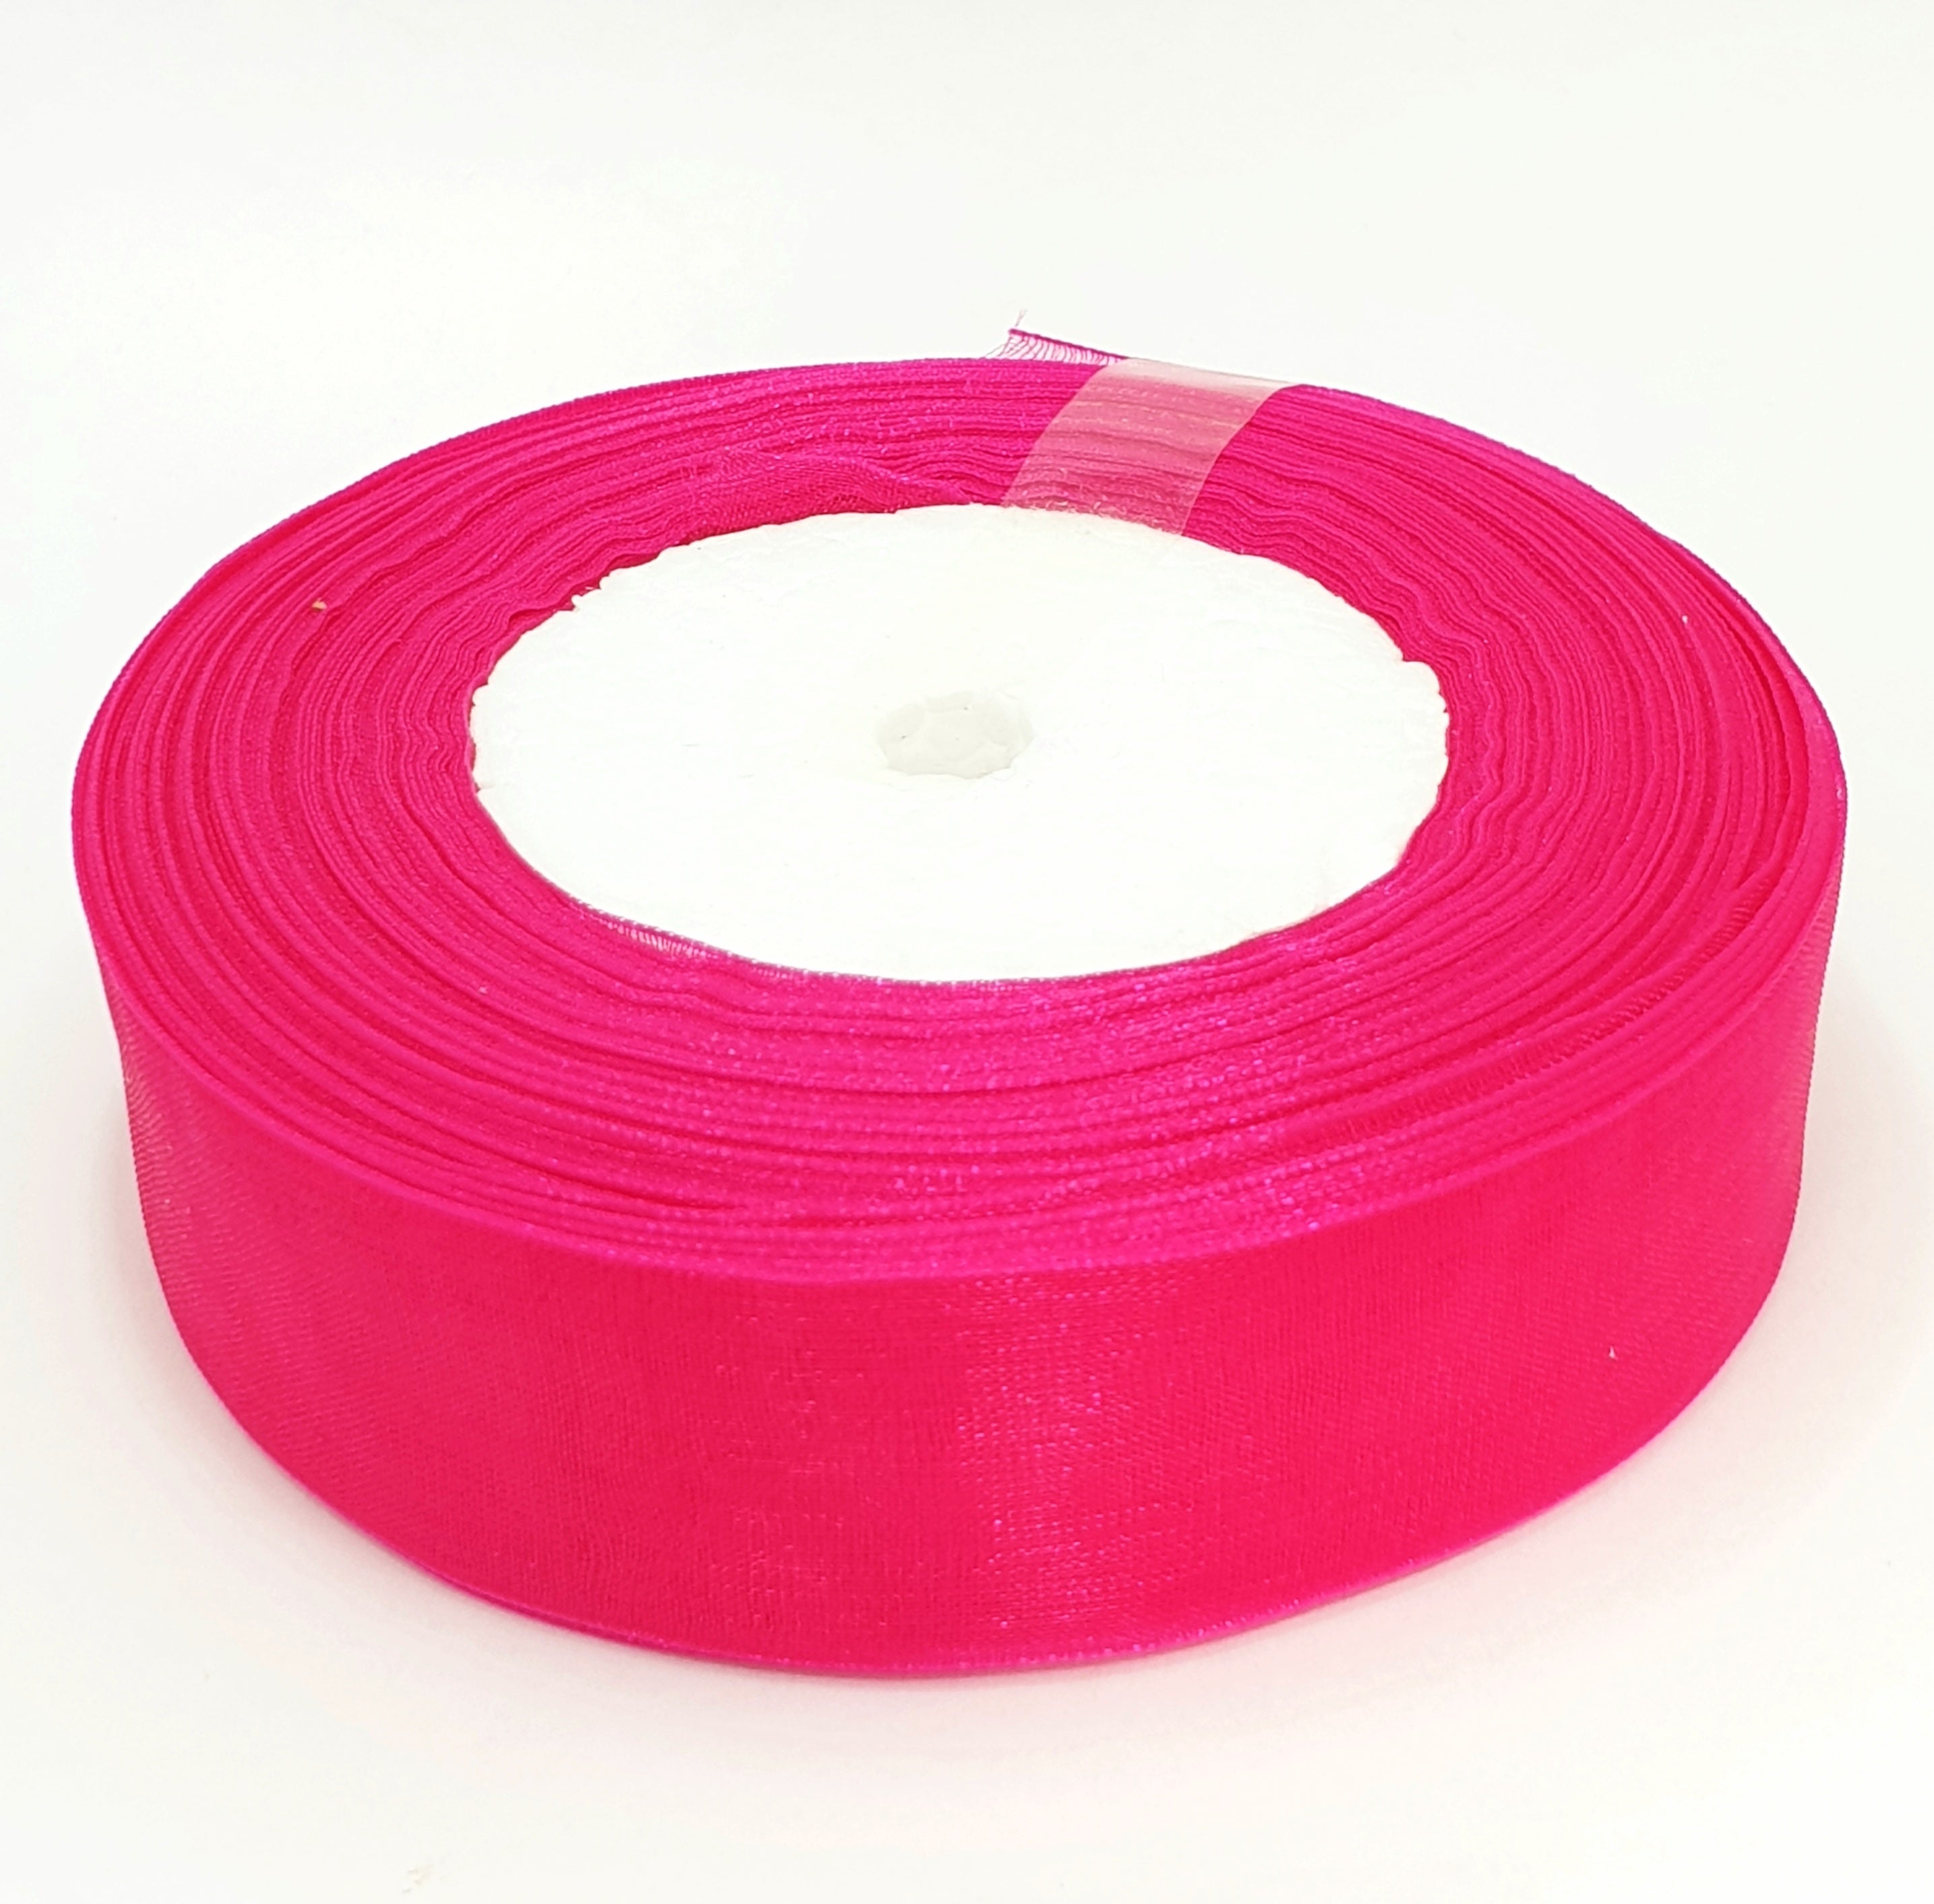 MajorCrafts 25mm 45metres Sheer Organza Fabric Ribbon Roll Dark Pink Shade R1028